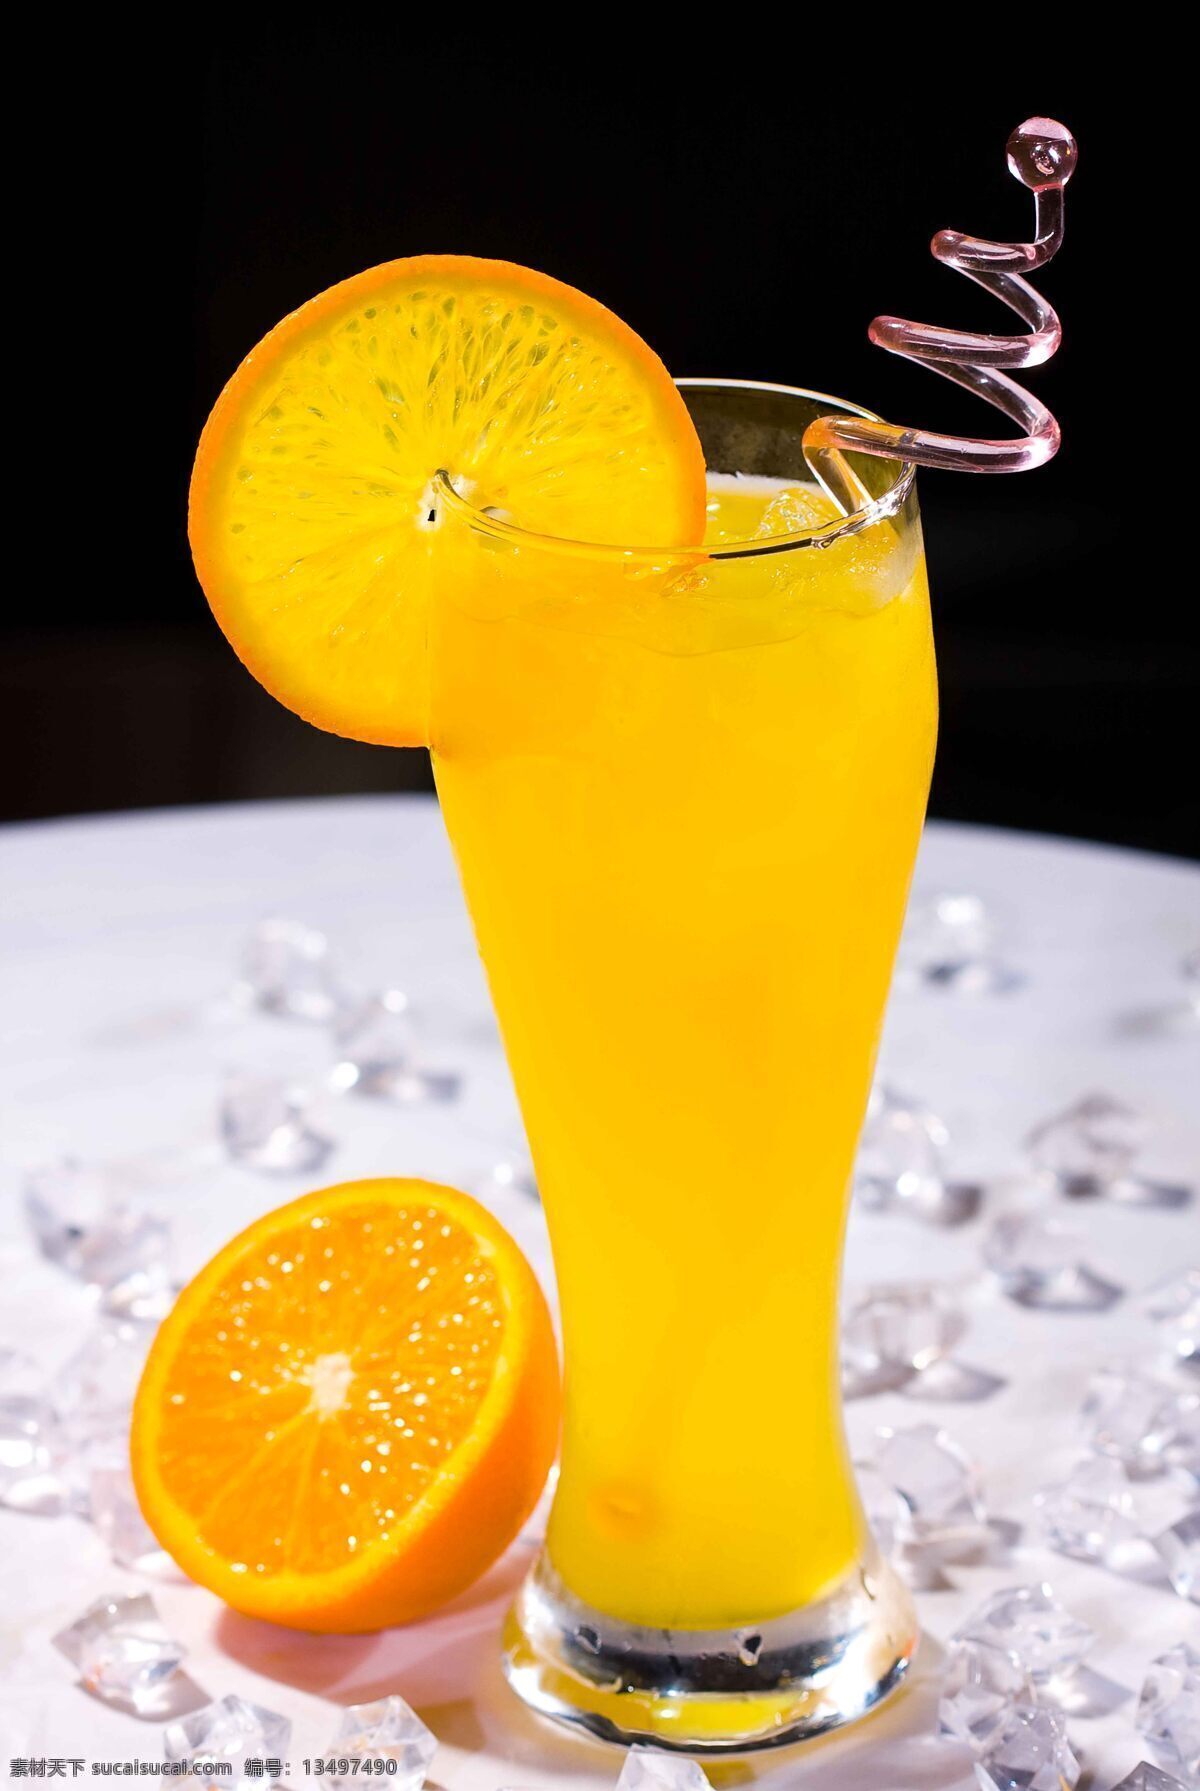 柠檬汁 柳橙汁 冰块 冰爽 喇叭杯 玻璃杯 玻璃吸管 蛇形吸管 饮料酒水 餐饮美食